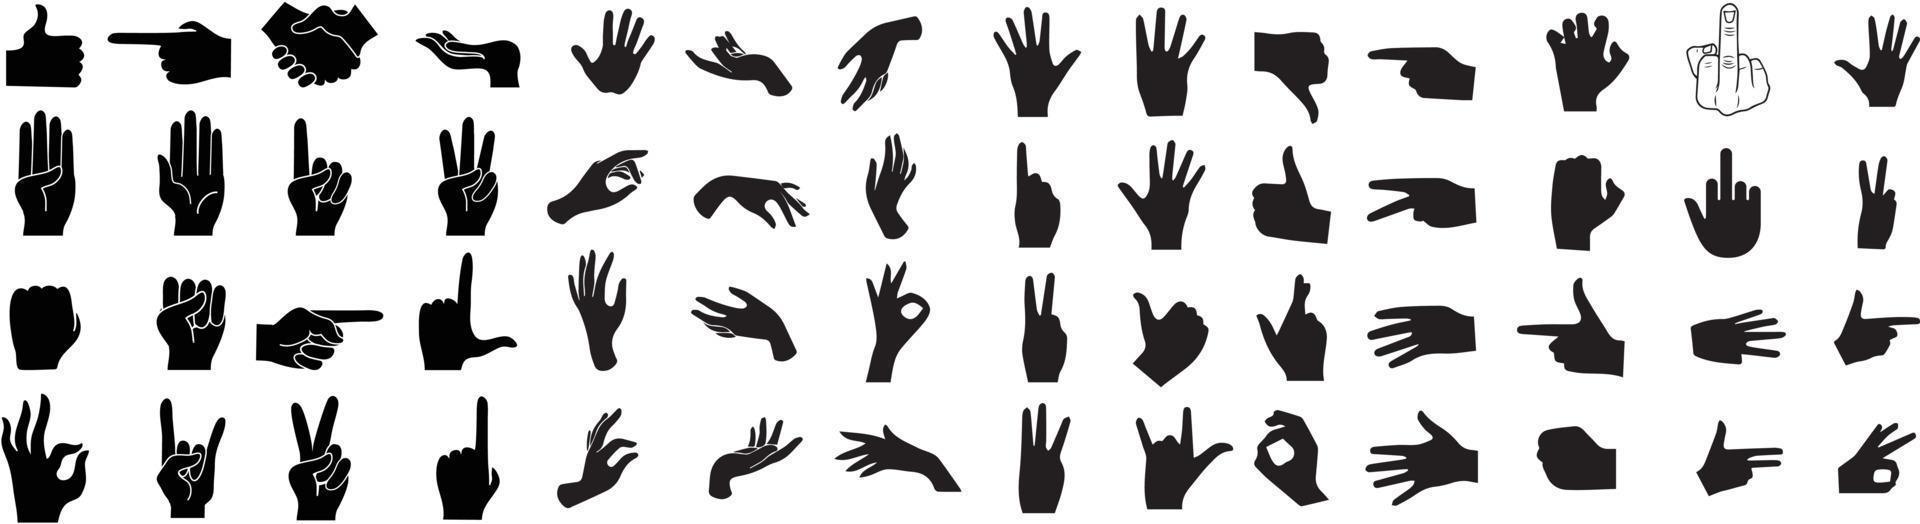 Hände Pose Satz. Hände Posen. Hand halten und zeigen Gesten, Finger gekreuzt, Faust, Frieden und Daumen hoch. Hand Zeichen groß einstellen vektor